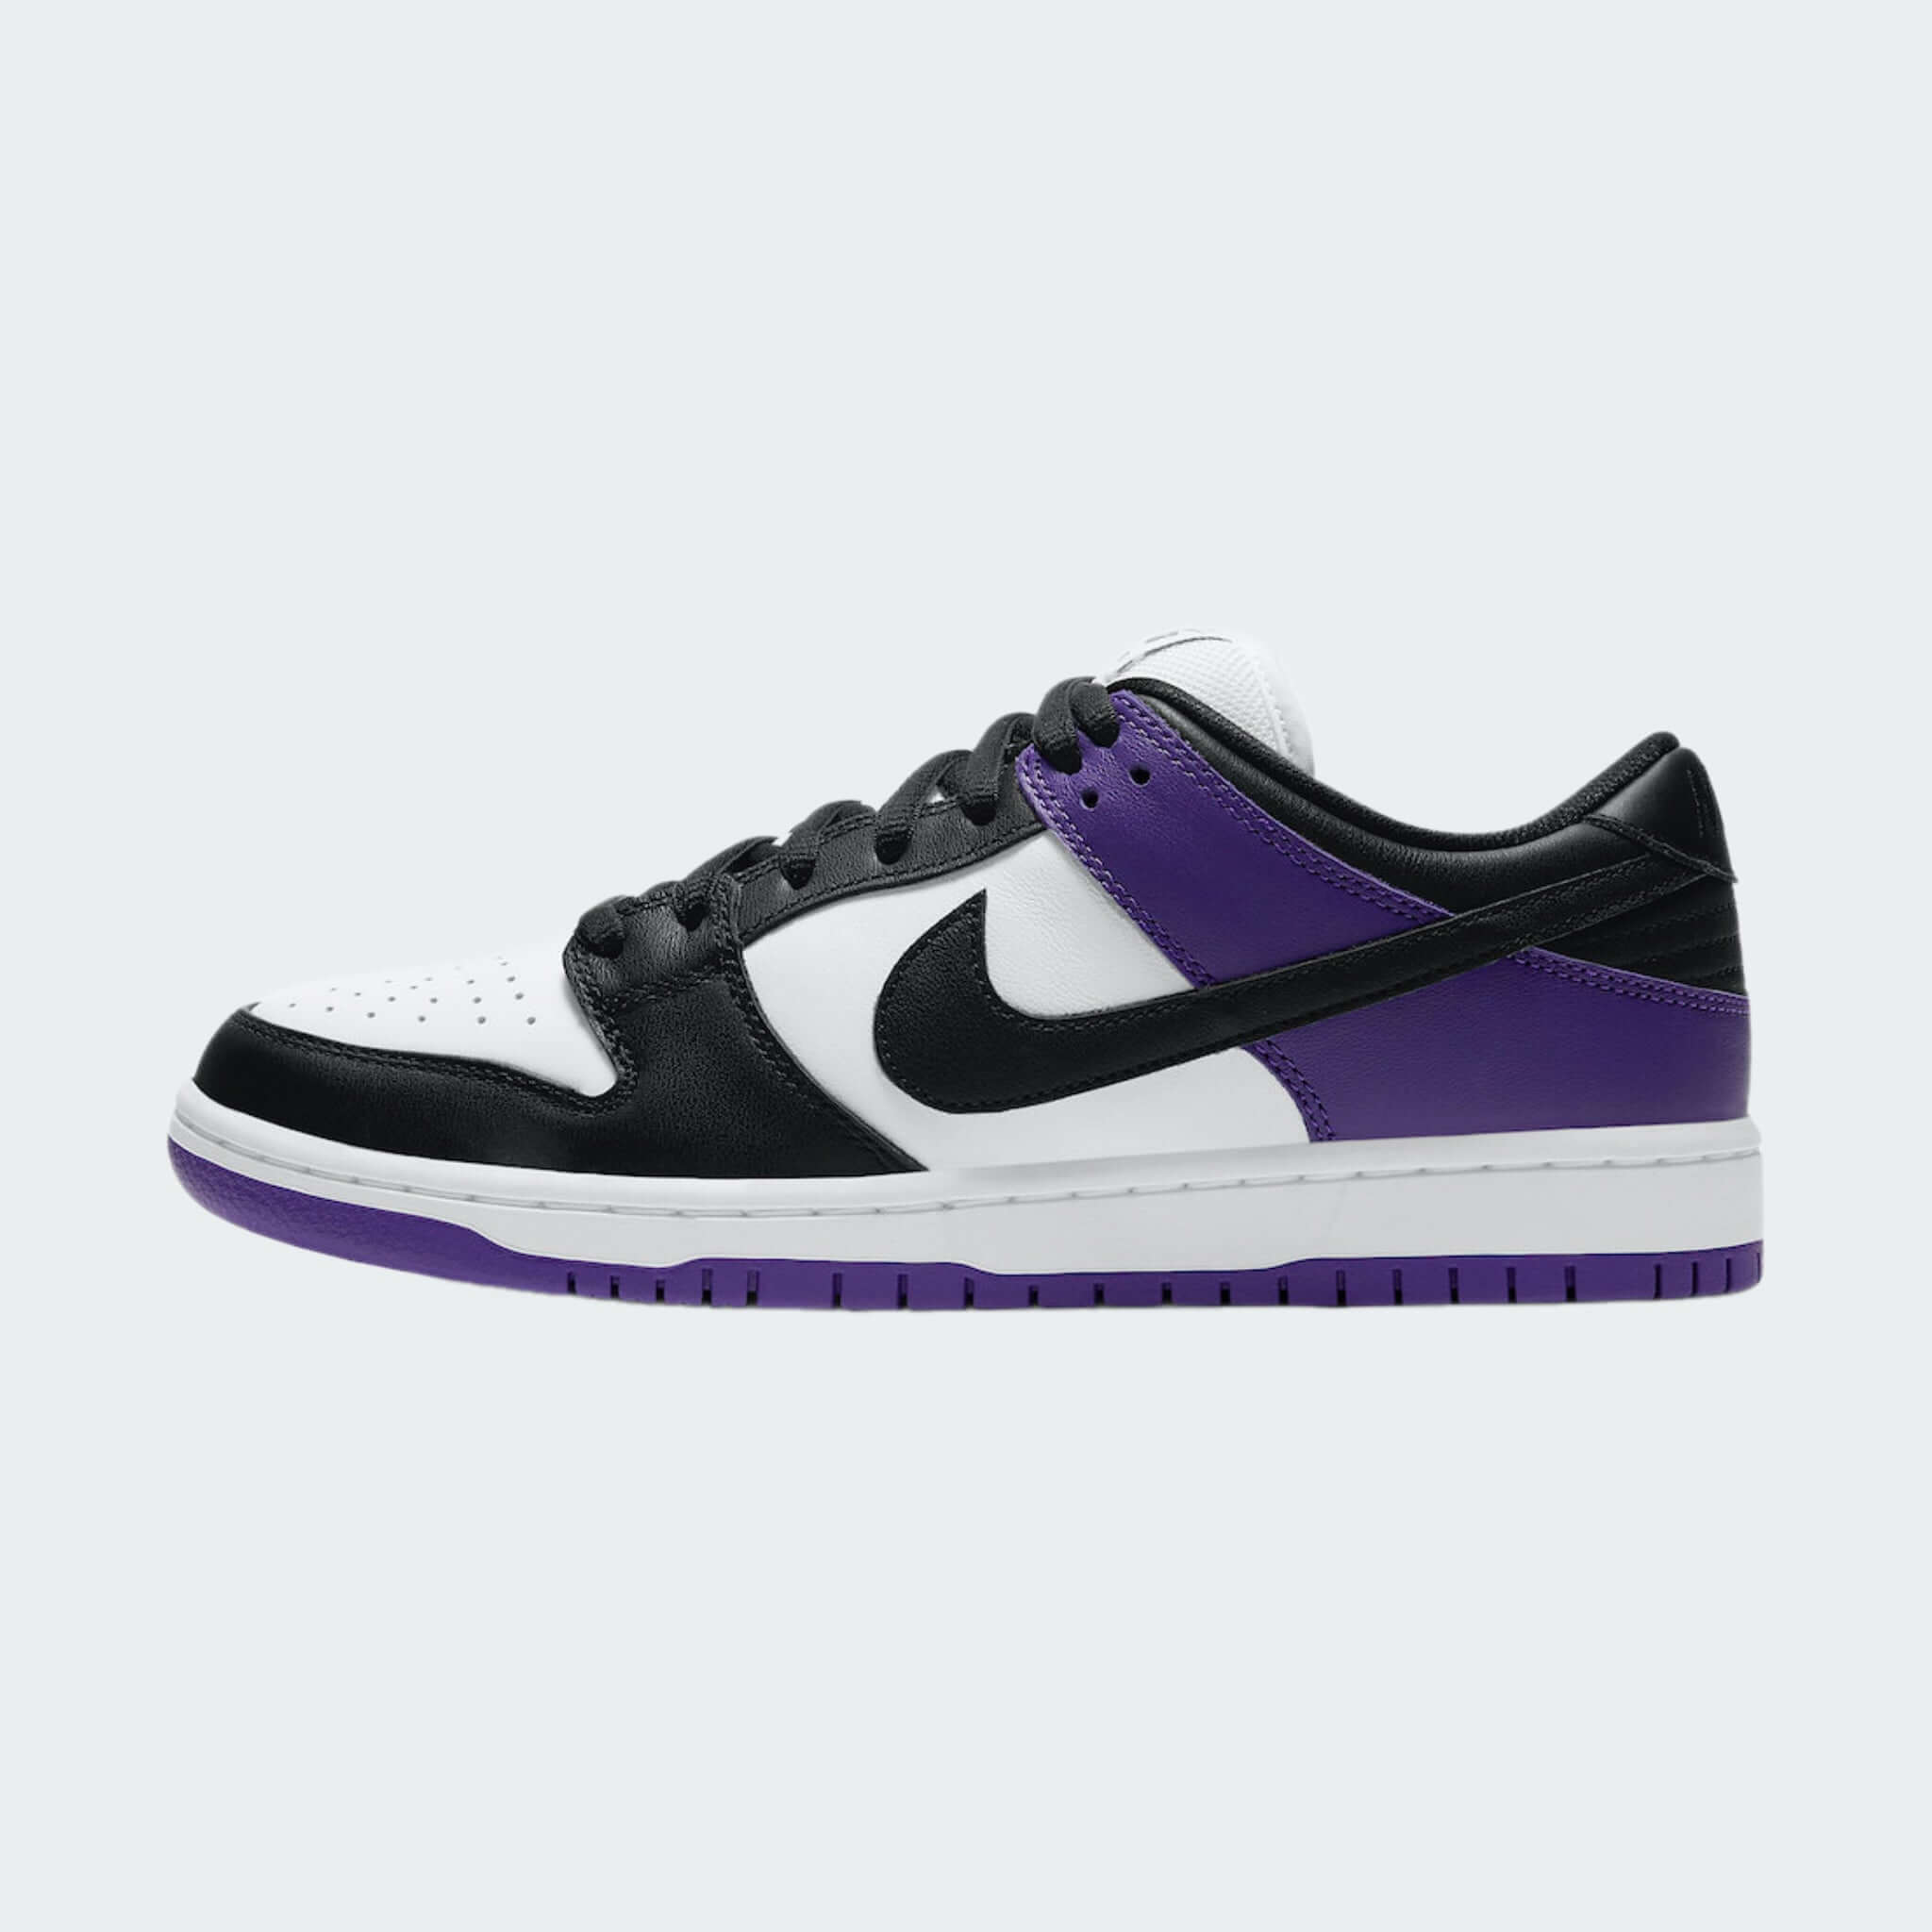 Nike SB Dunk Low “Púrpura Corte”